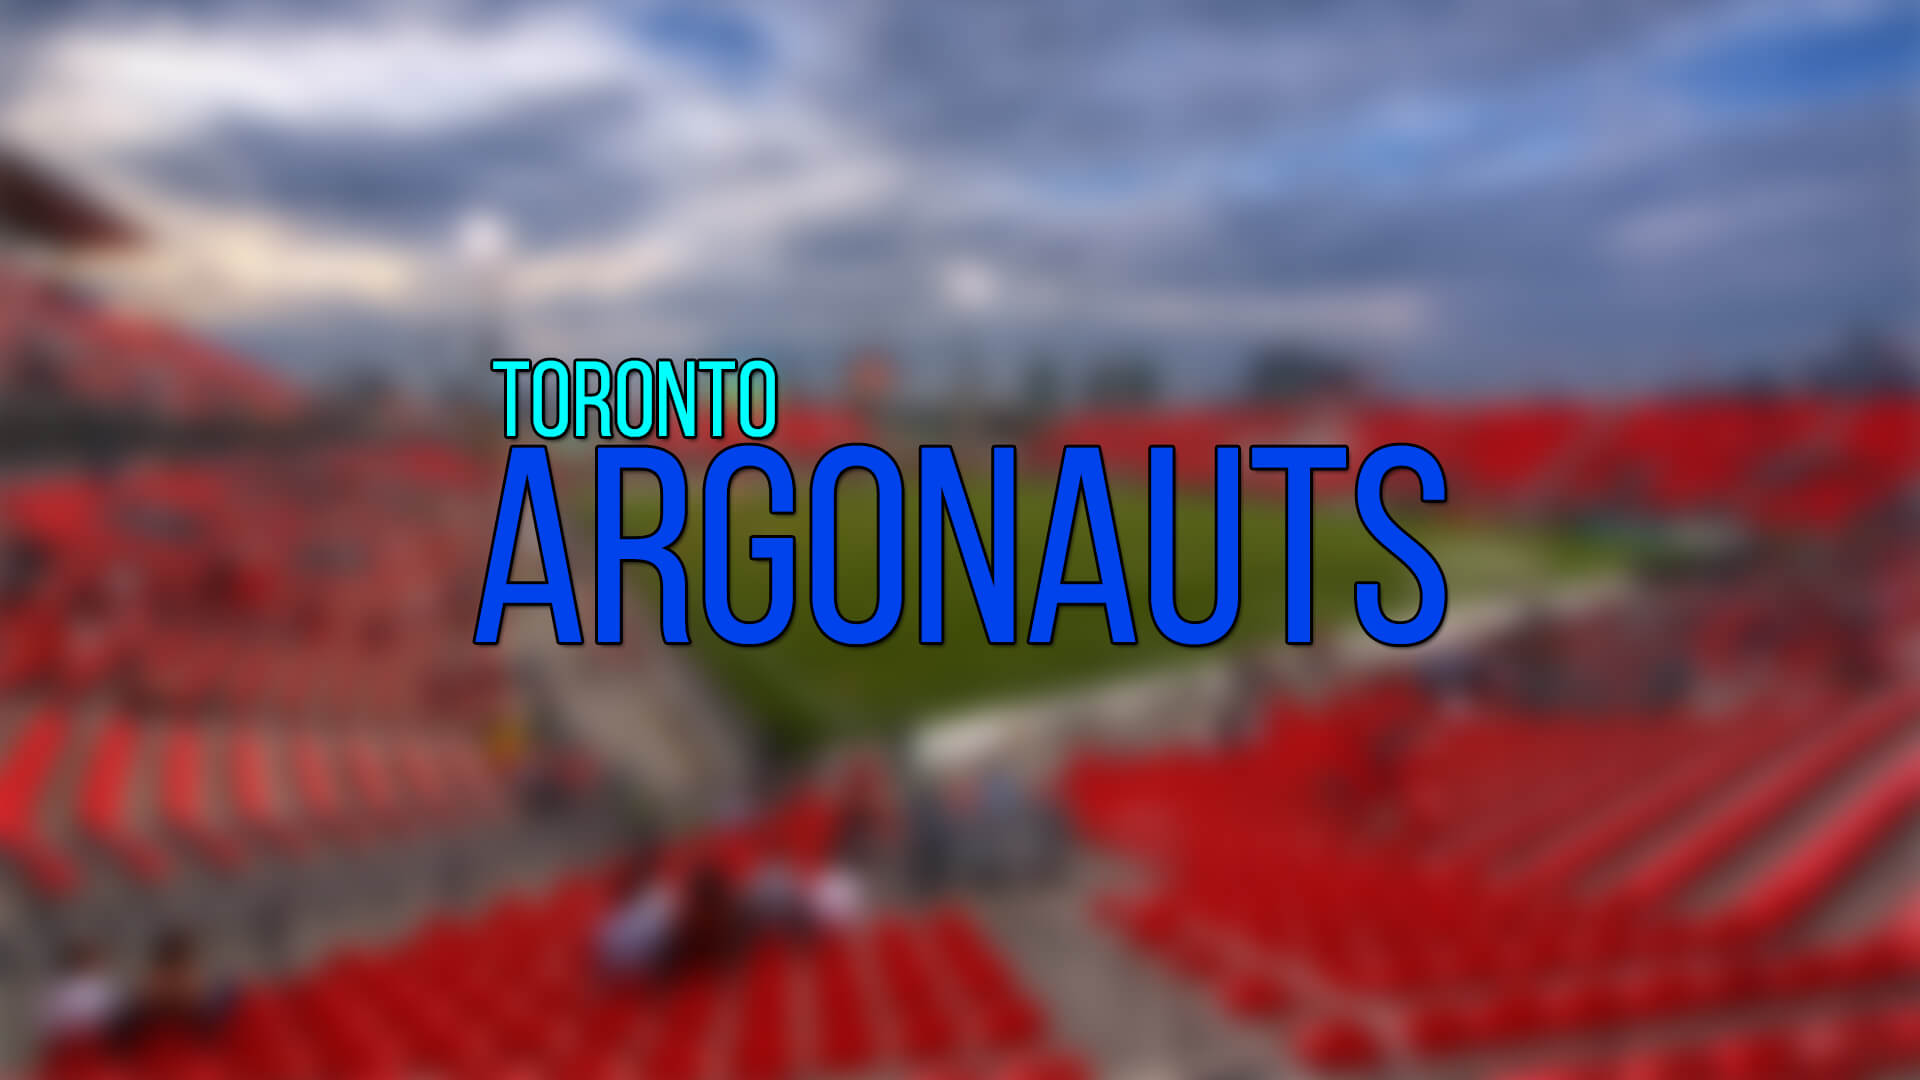 Toronto Argos, Ronald Ollie ile Kontratı Uzattı | Korumalı Futbol Türkiye